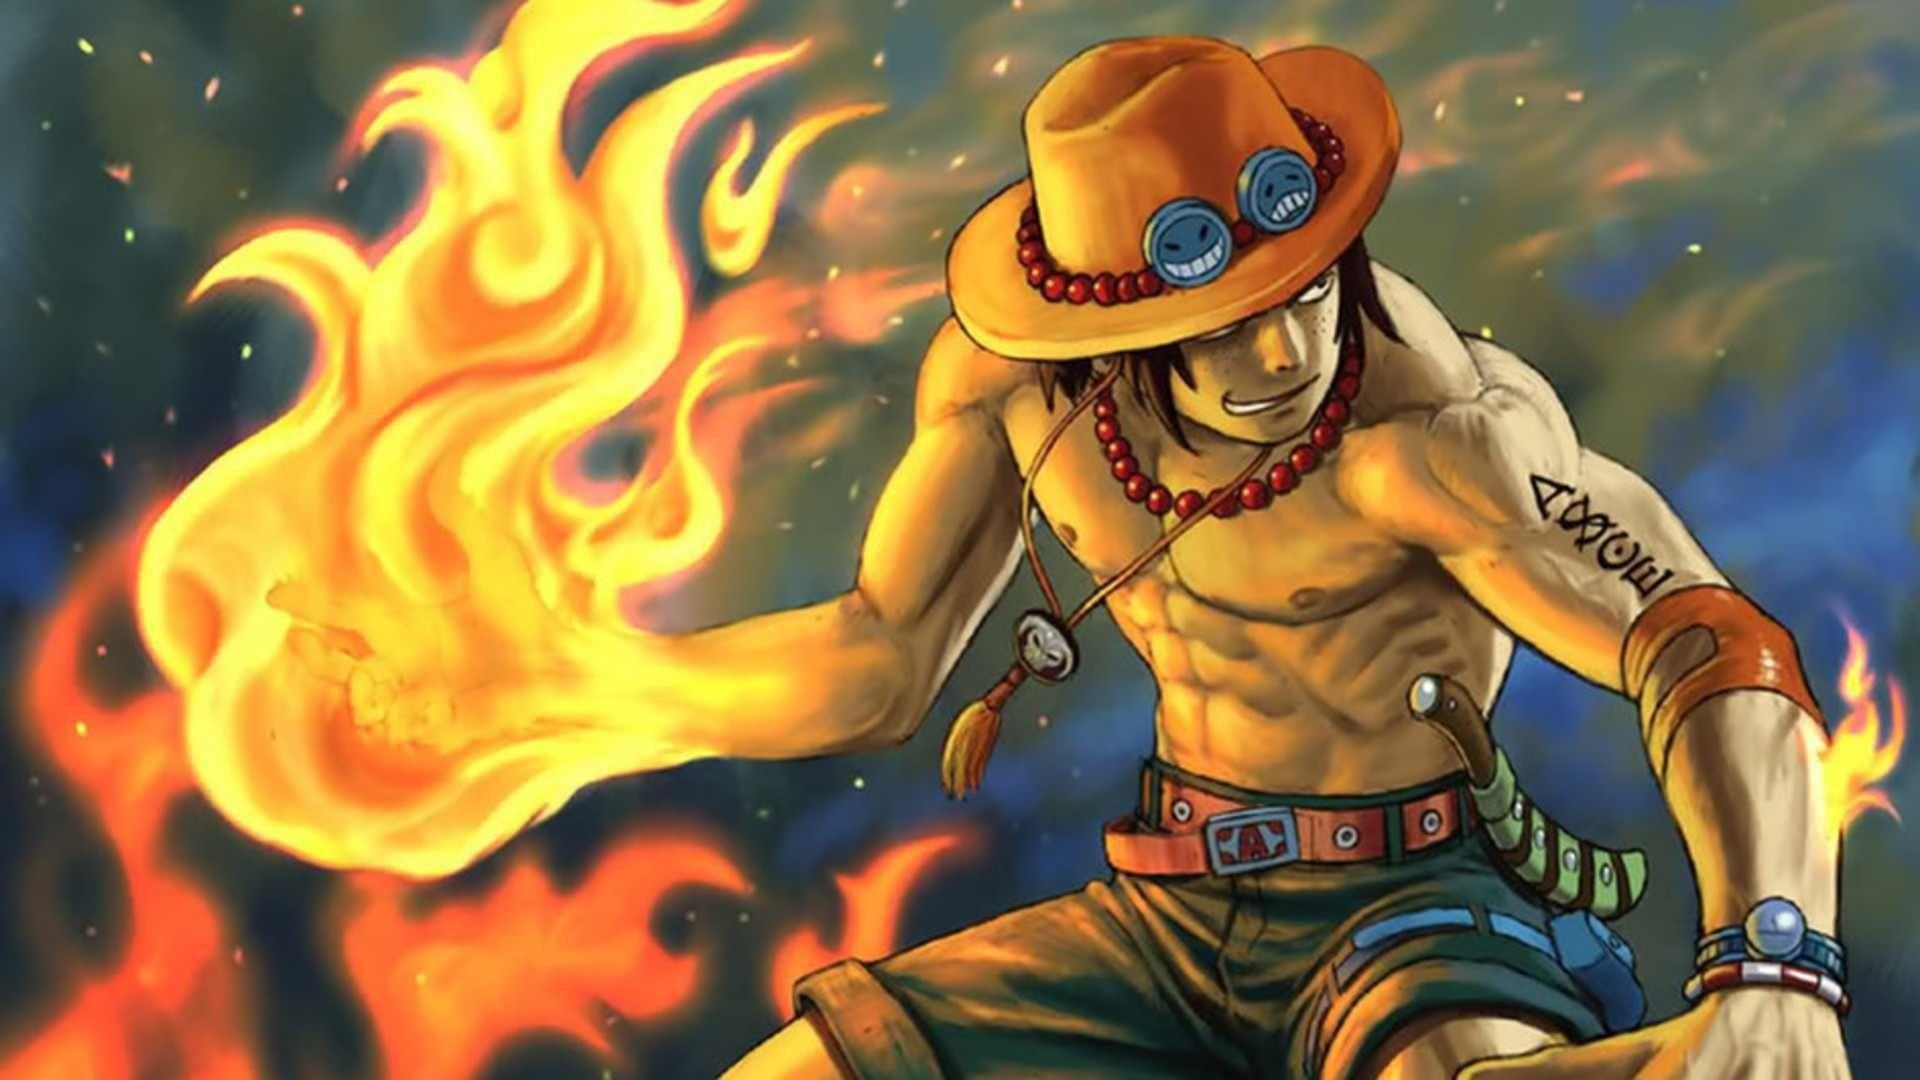 Ace One Piece wallpaper là bức ảnh lý tưởng để thể hiện sự yêu mến của bạn đối với một trong những nhân vật quan trọng nhất trong One Piece. Với nhiều lựa chọn về chất lượng của các bức ảnh, bạn có thể tìm thấy nền tảng phù hợp nhất để làm mới không gian màn hình của mình.